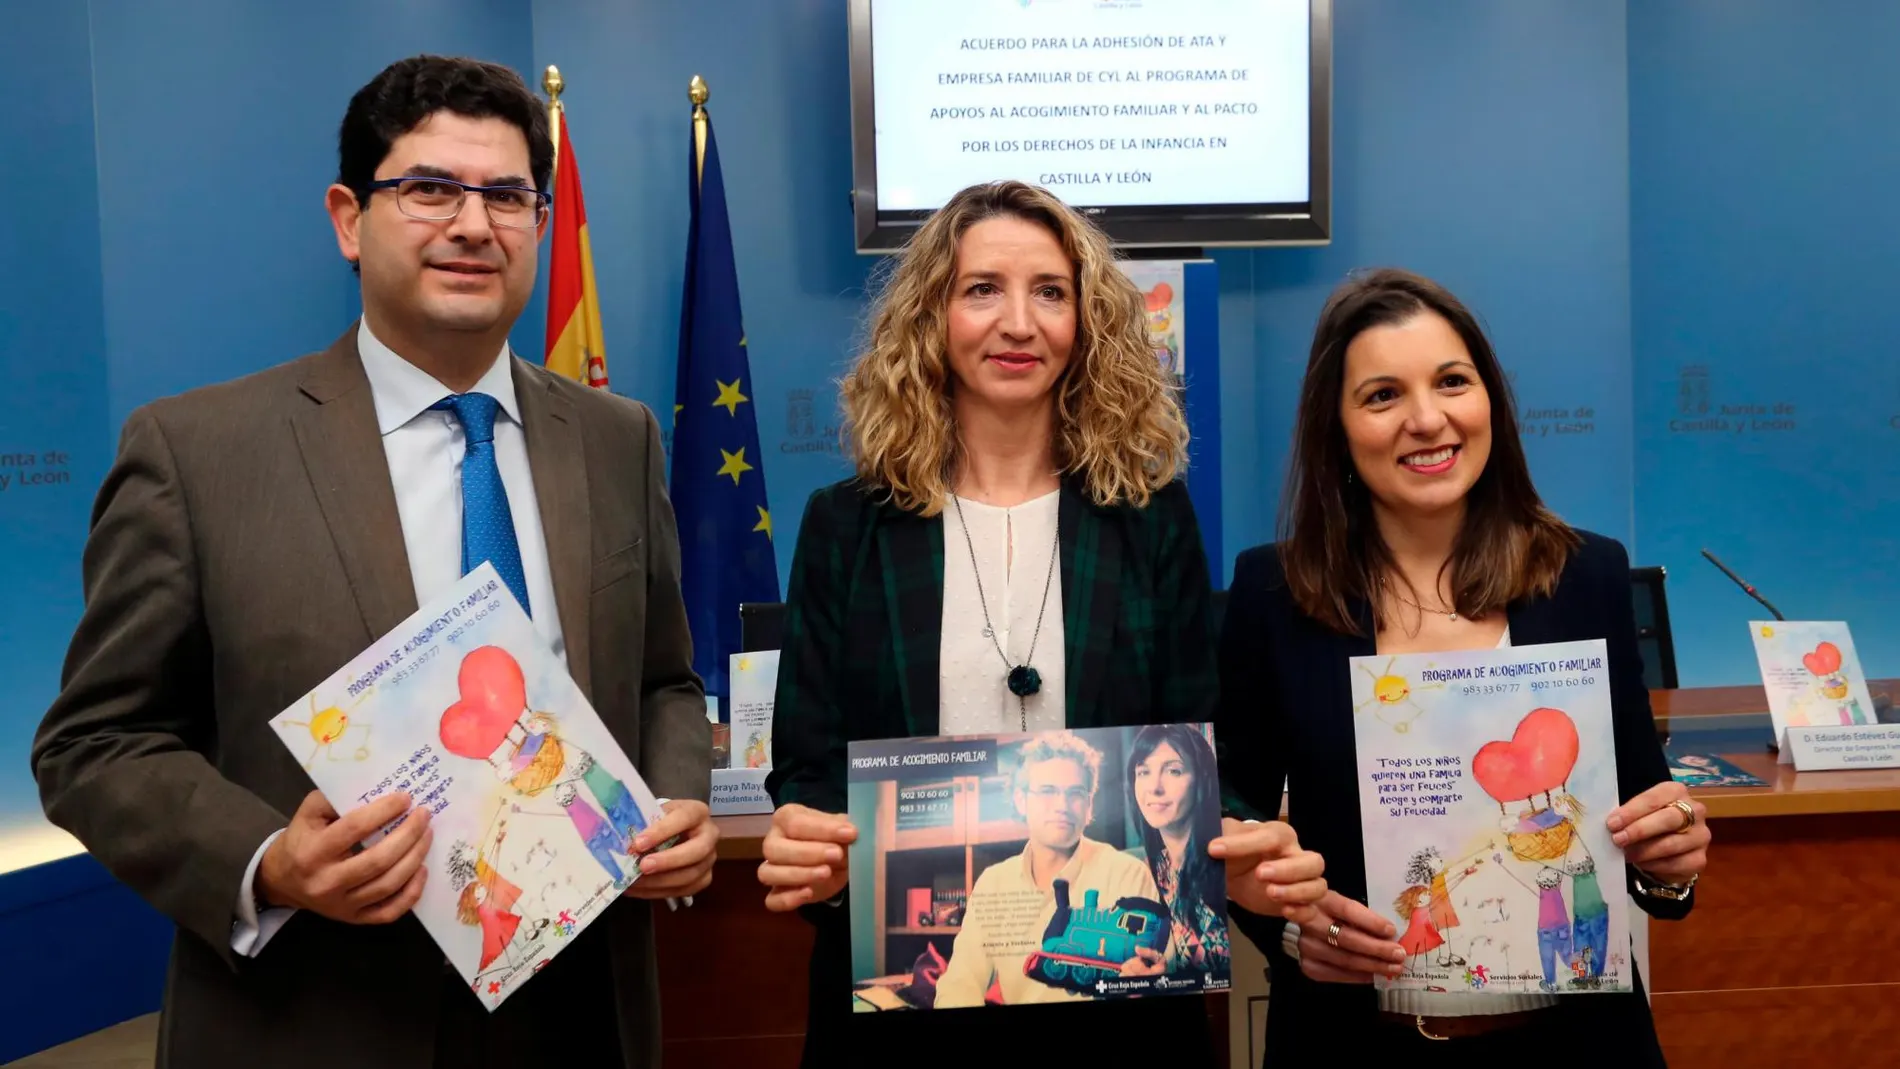 La consejera Alicia García, junto a la presidenta de ATA Castilla y León, Soraya Mayo, y el director de Empresa Familiar, Eduardo Estévez, presentan el acuerdo